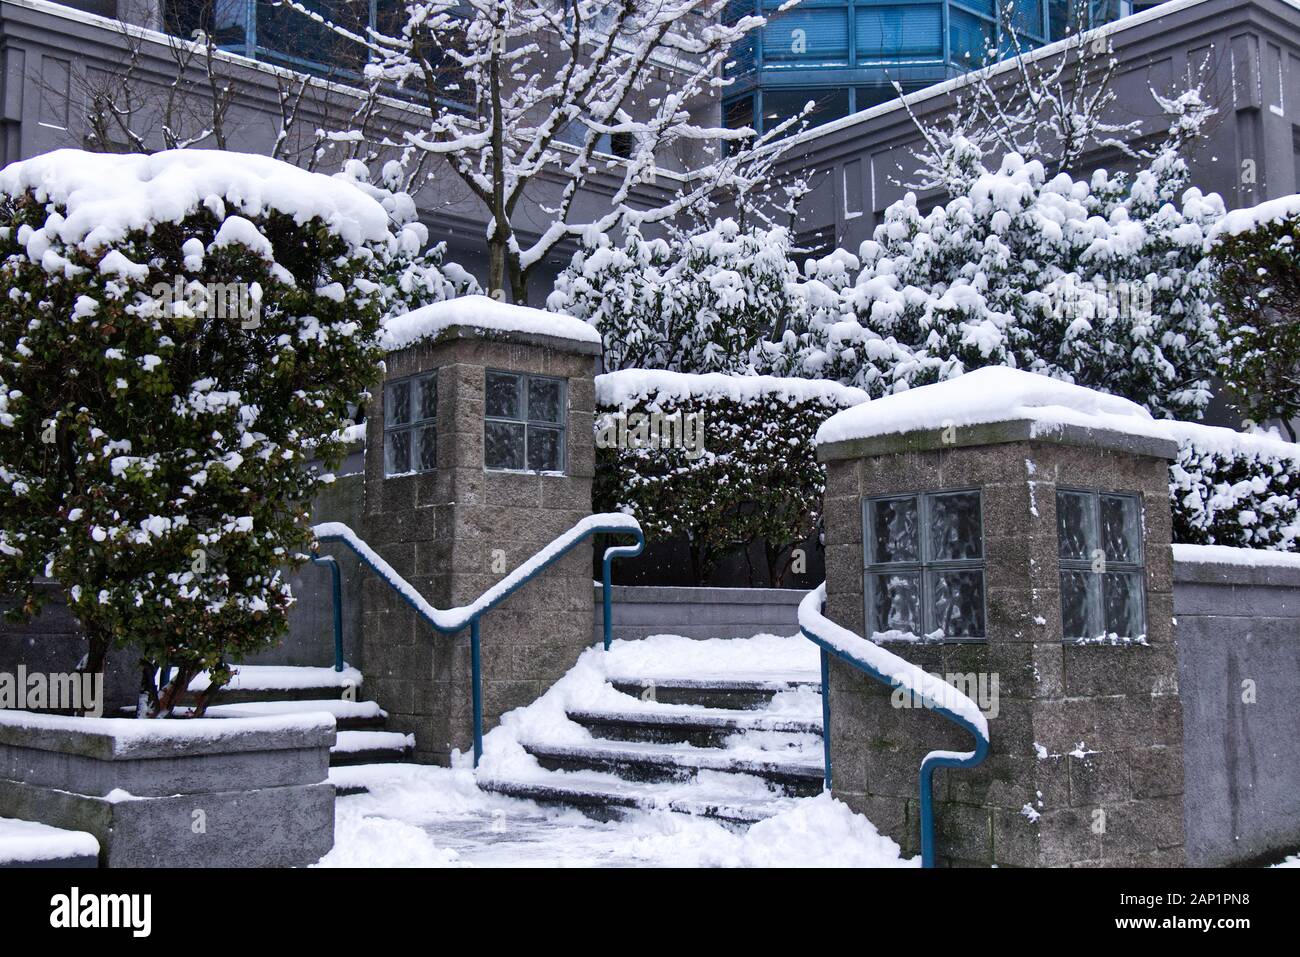 Vancouver, Canadá - 13 de enero de 2020: Una vista del edificio resediente en 1415 West Georgia Street cubierto de nieve. Foto de stock